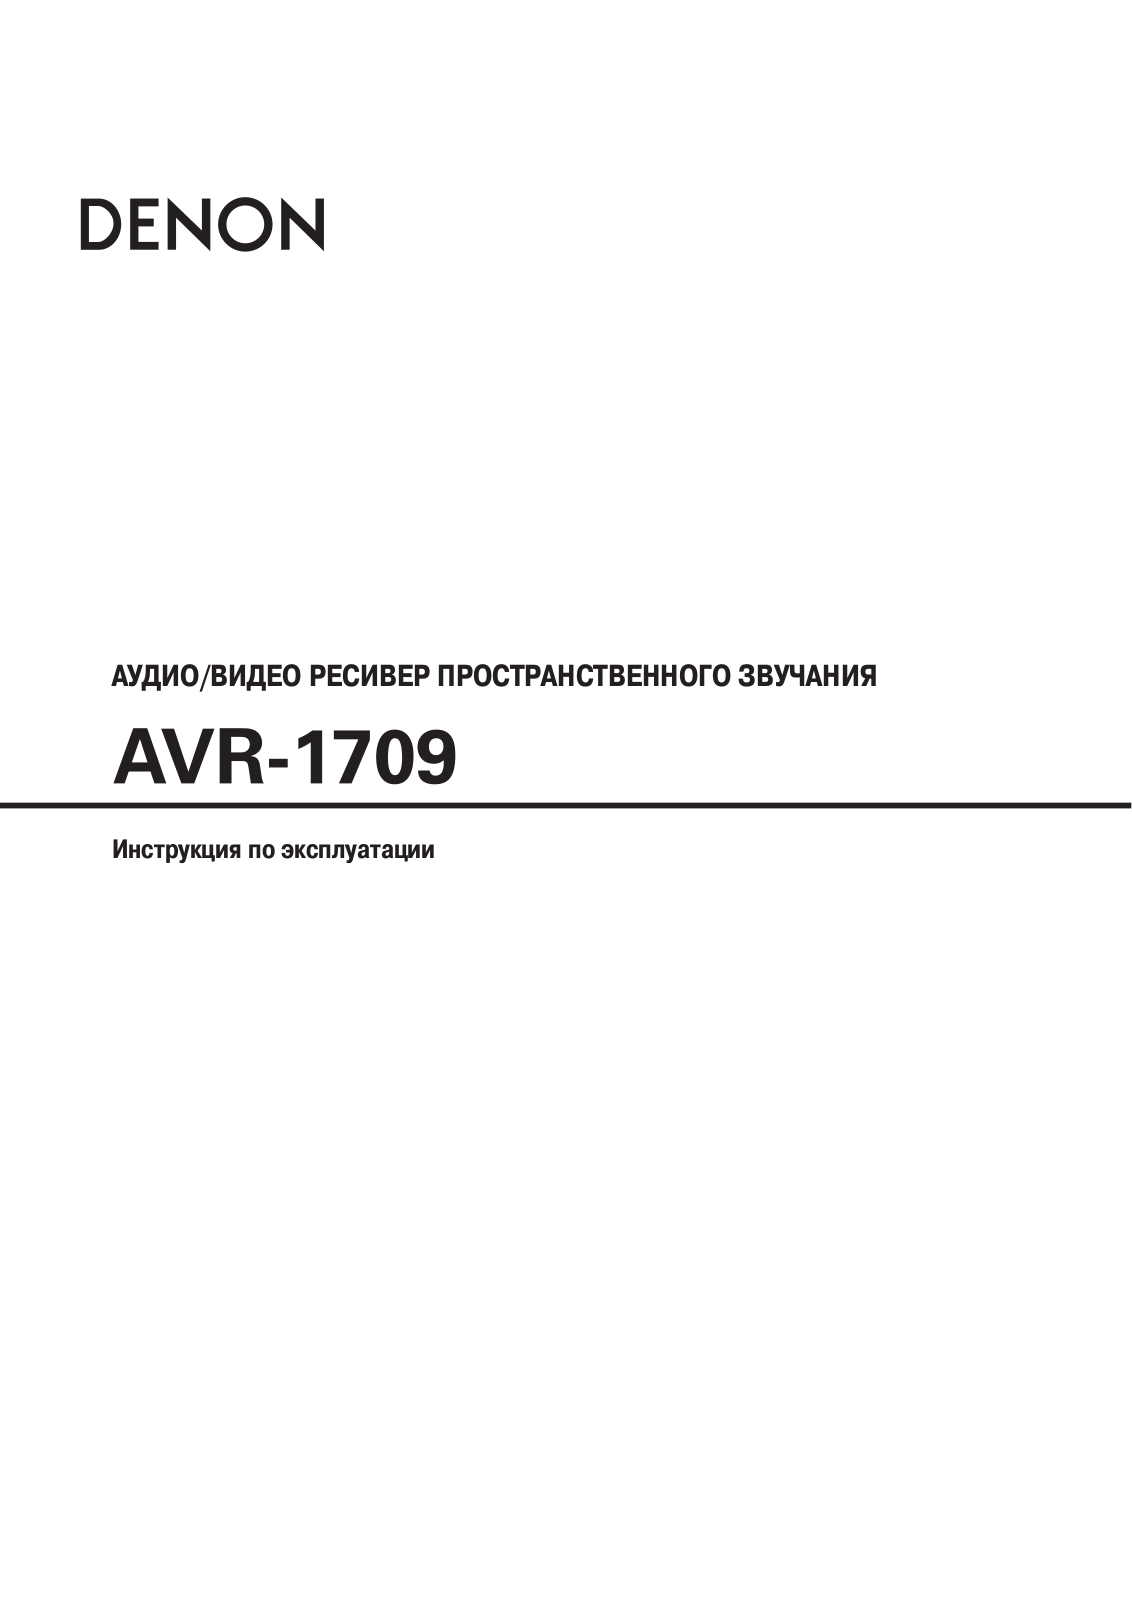 Denon AVR-1709 User Manual